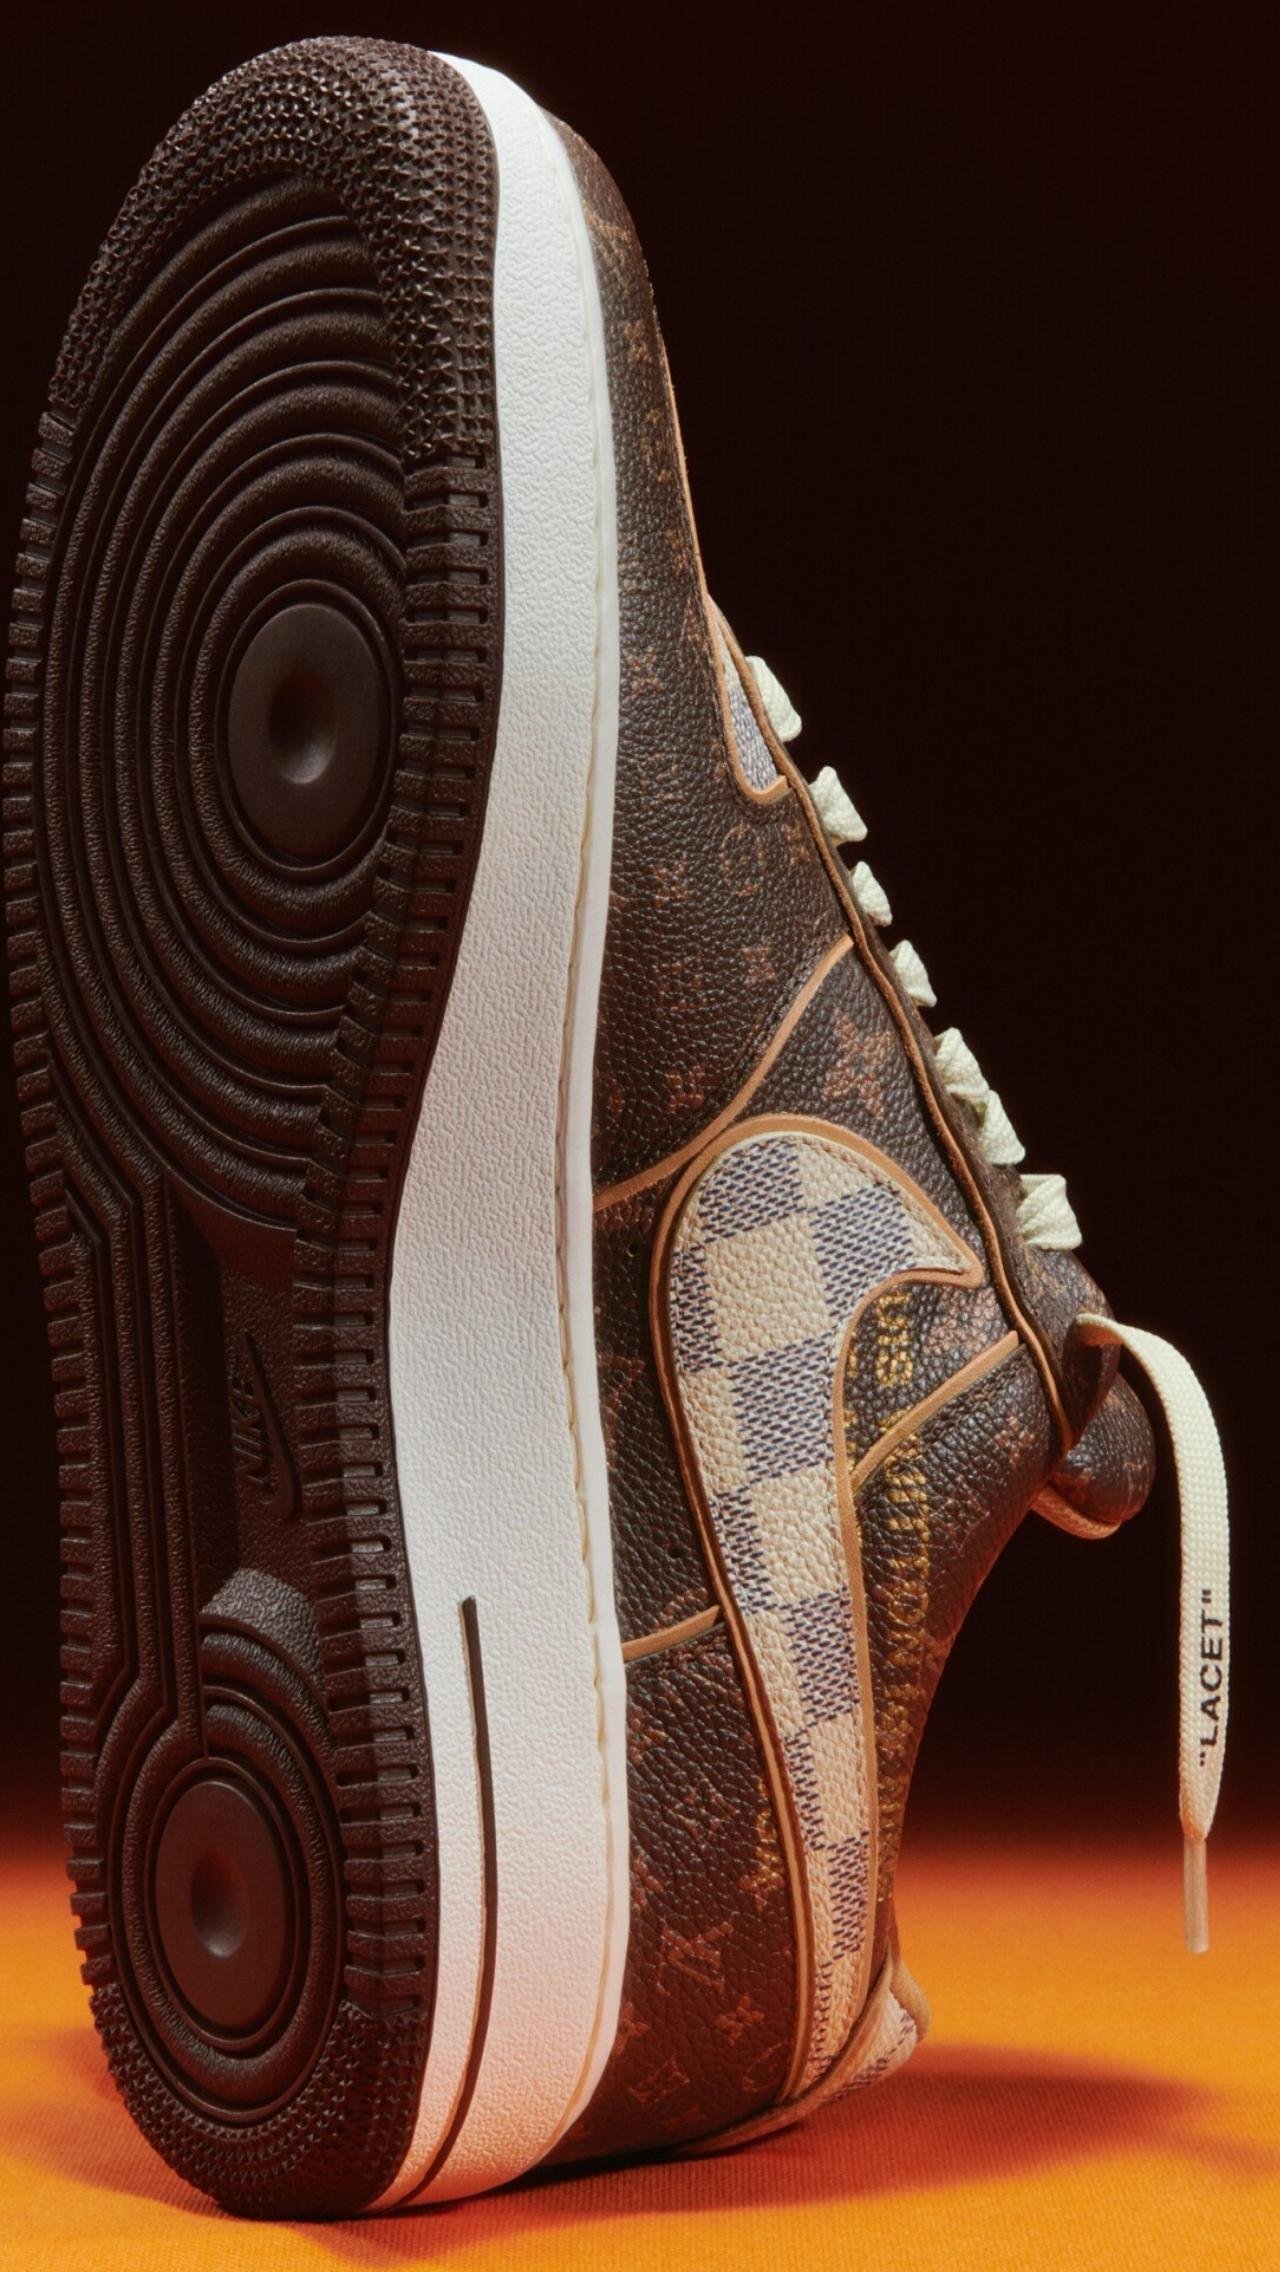 В дизайне модели использована кожа со знаковой монограммой LV. Надпись «AIR» на подошве и подписанные шнурки отсылают к эстетике Off-White.